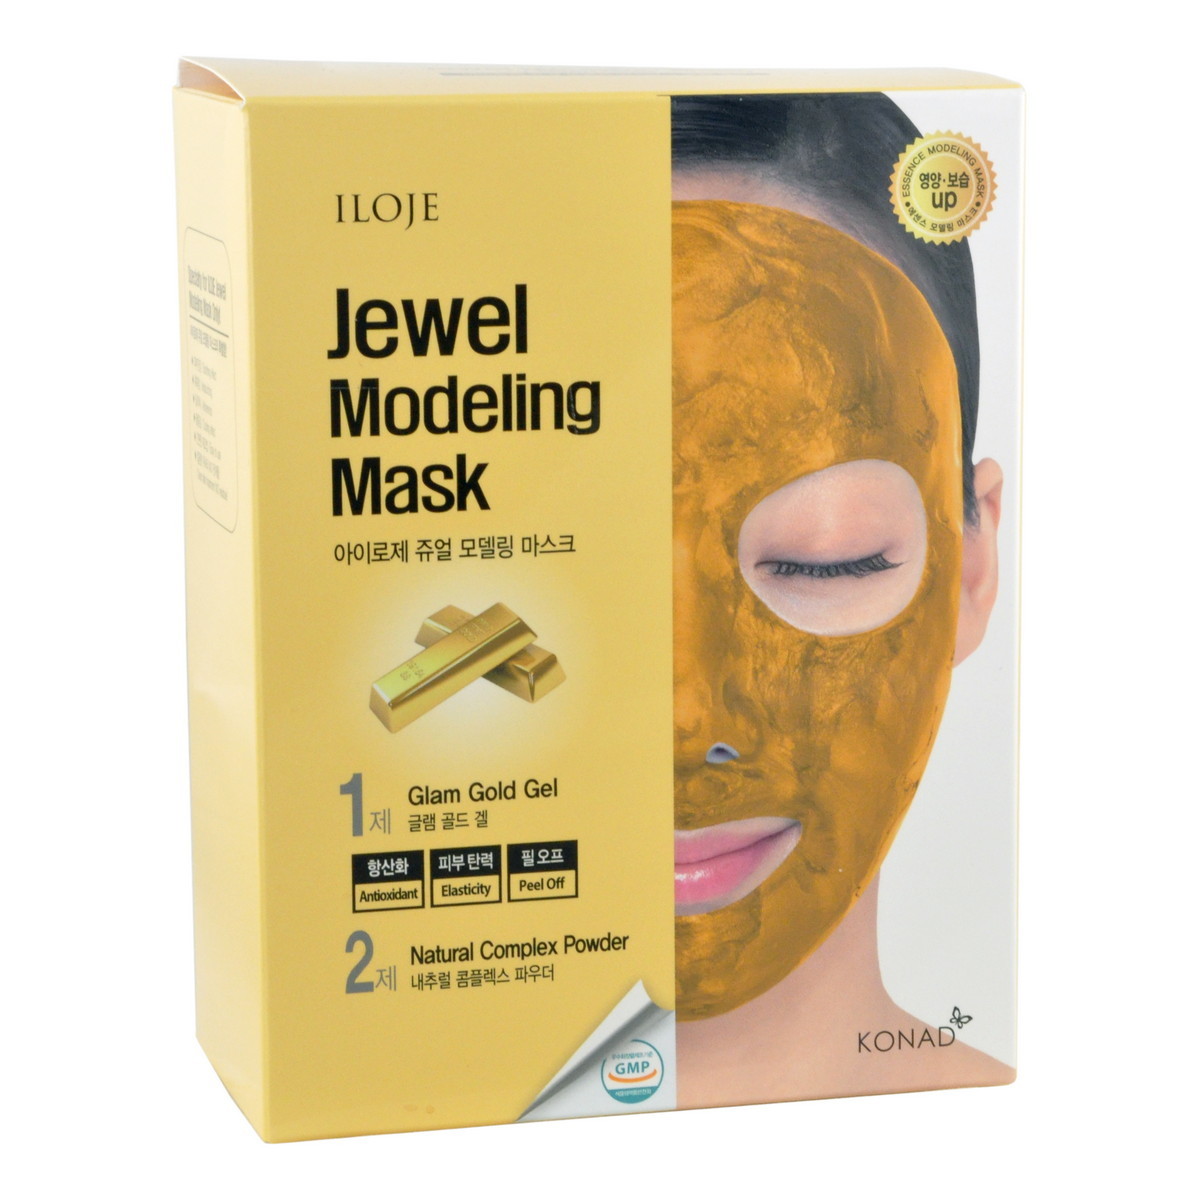 Маска косметическая Konad / Моделирующая маска для лица с частицами золота, арт. 726547, 50 g*5, 5 g*5